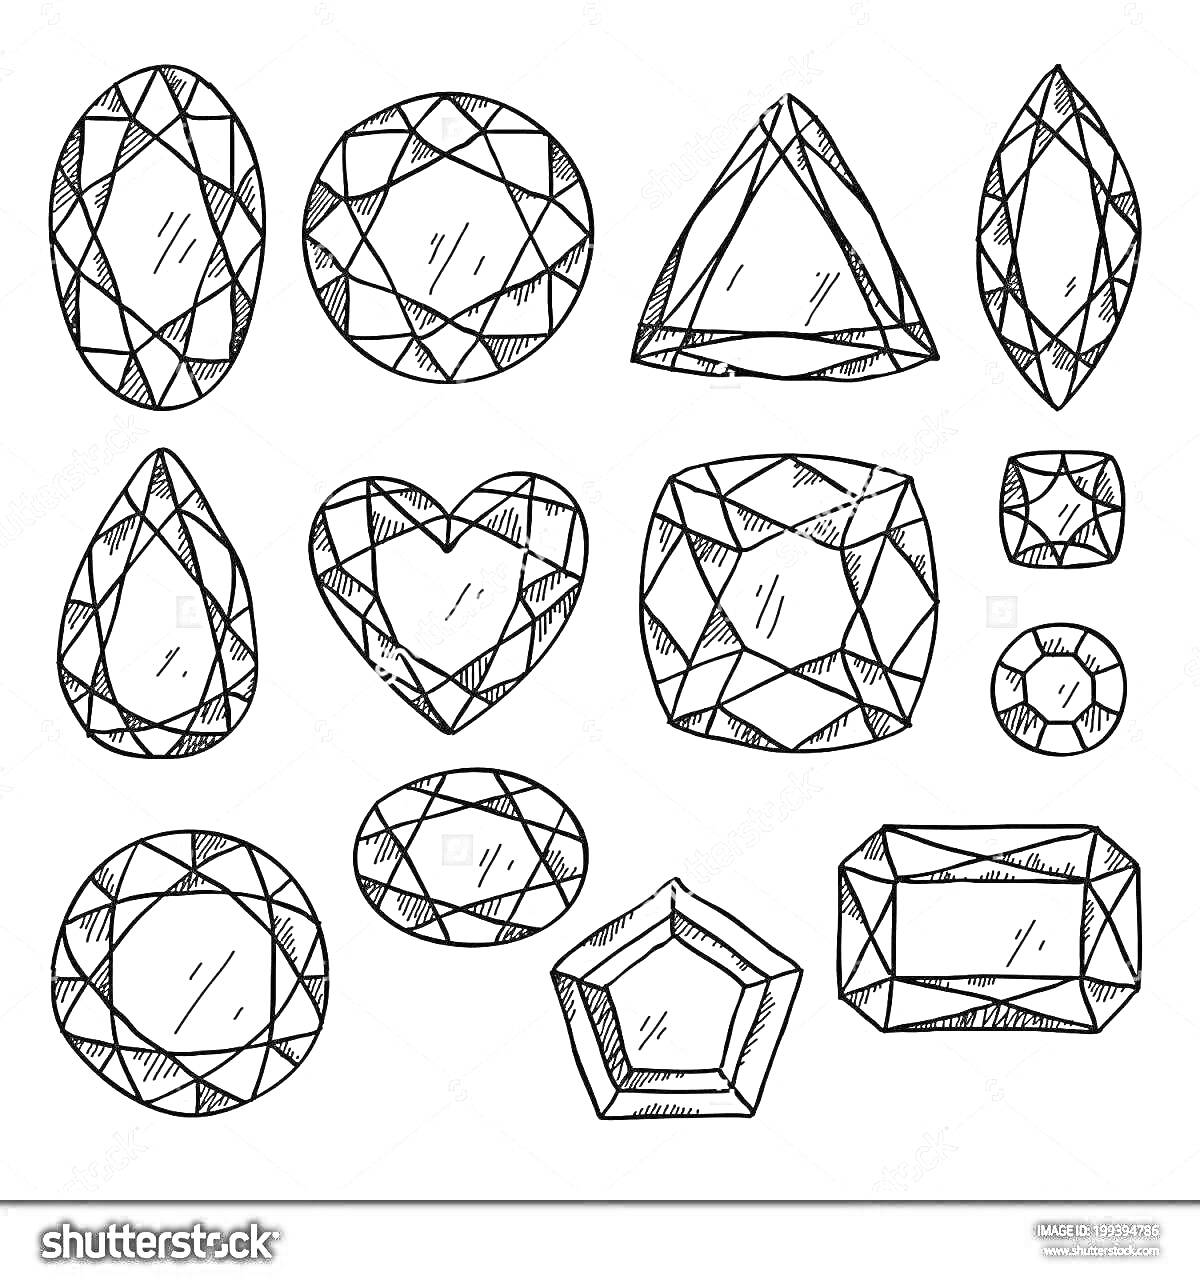 Раскраска Красочные драгоценные камни различных форм: круглый, треугольный, овал, капля, сердце, квадрат, шестиугольник, прямоугольник